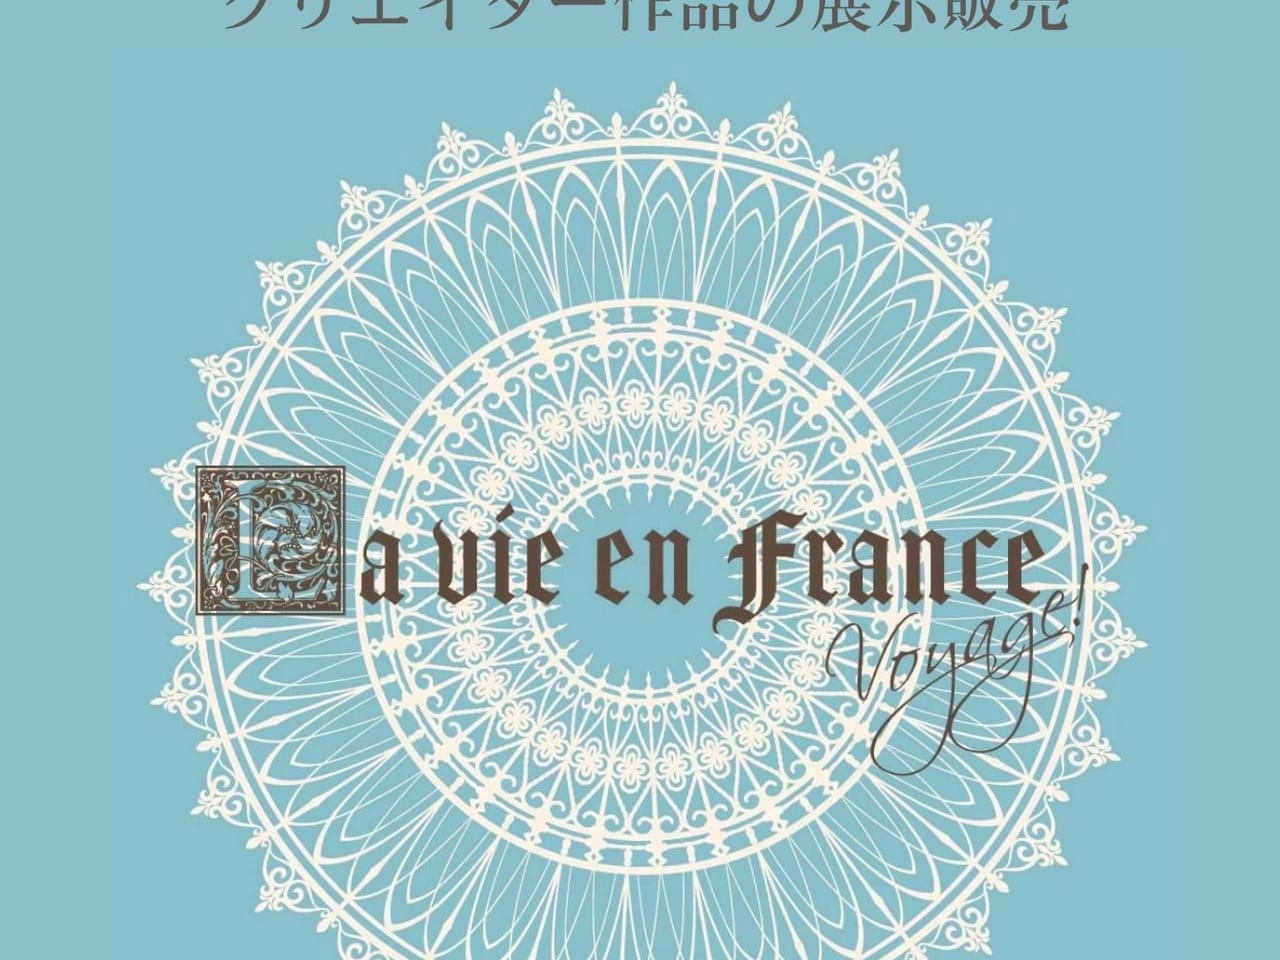 クリエイターズイベント/展示販売会 La vie en France (ラ・ヴィ・アン・フランス)のチラシ